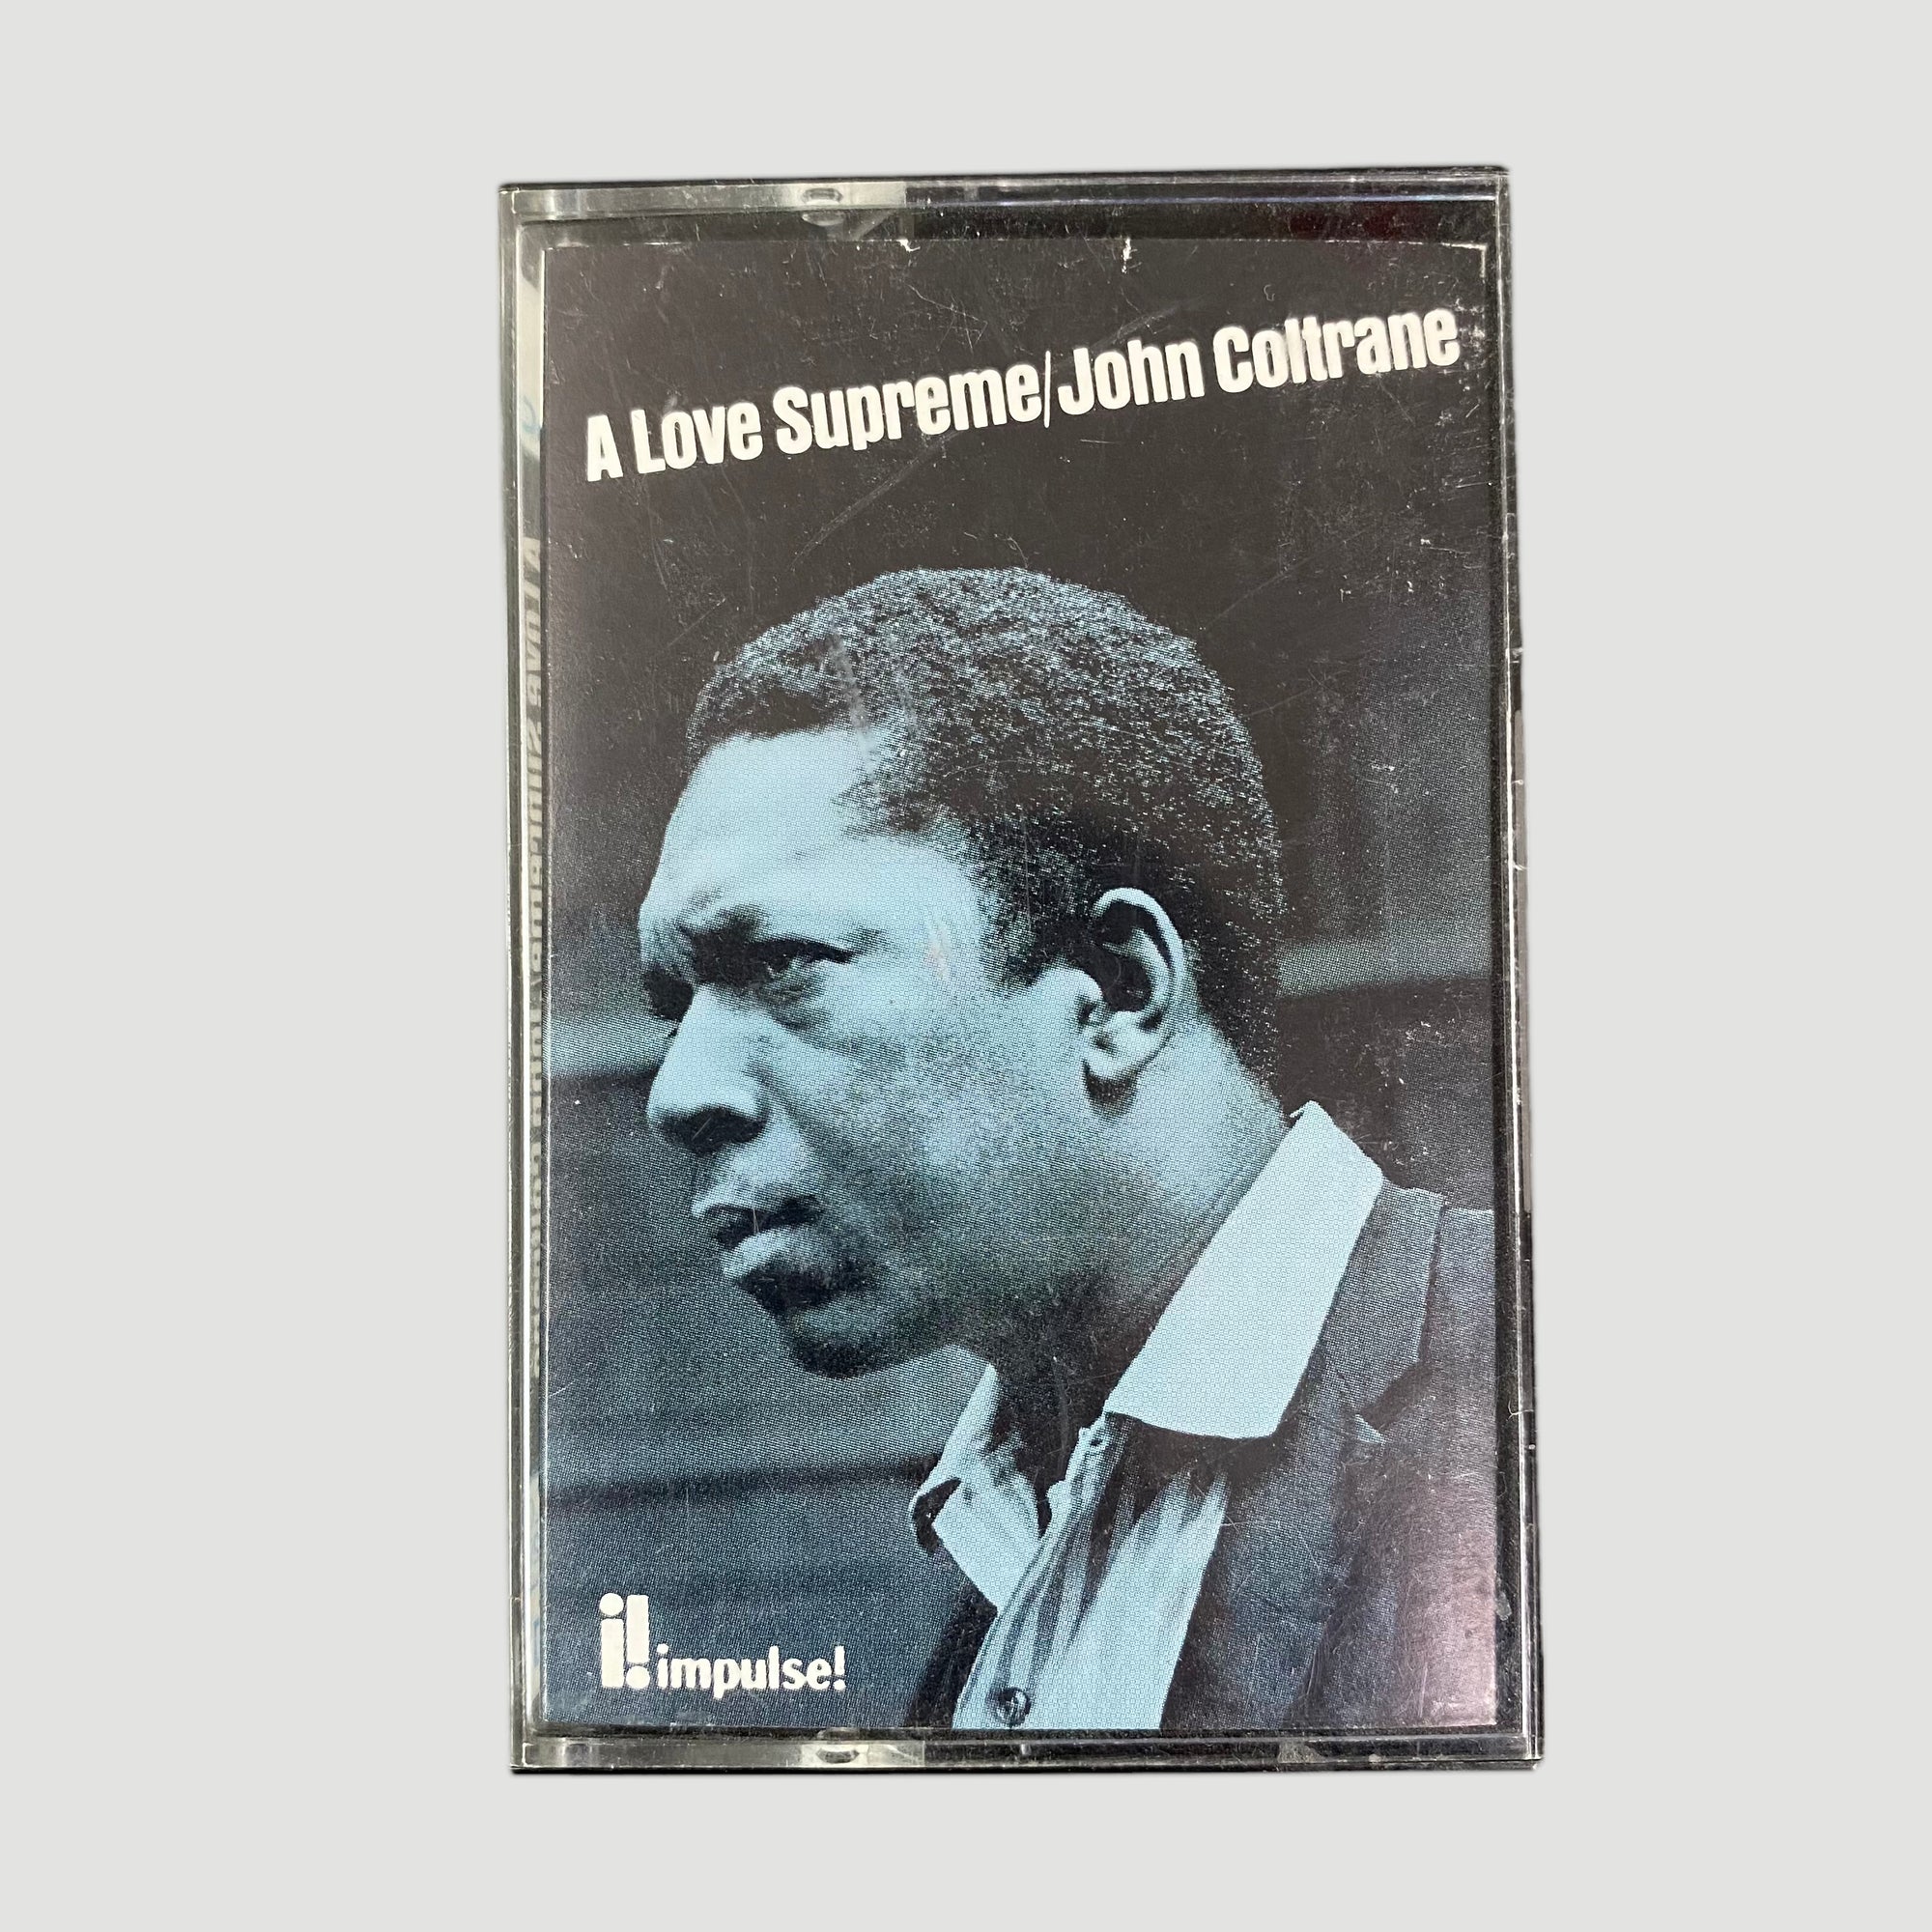 1991 John Coltrane 'A Love Supreme' Cassette